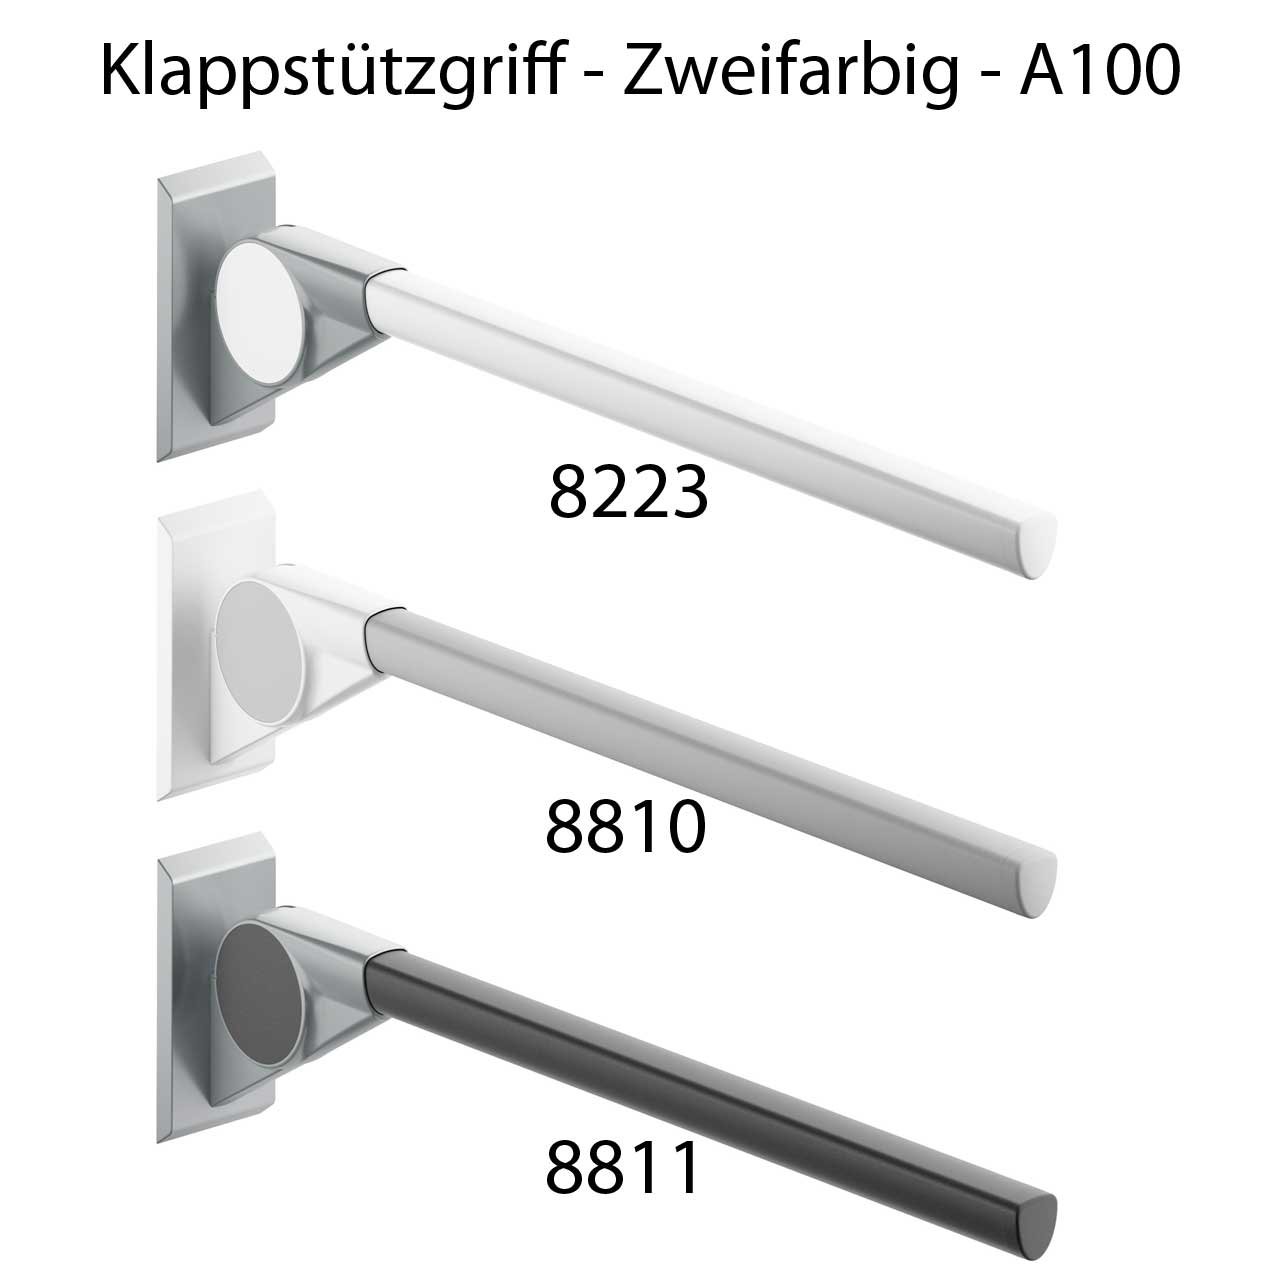 Universal Haltegriff Bad WC Toilette - Klappbar - FSB A100